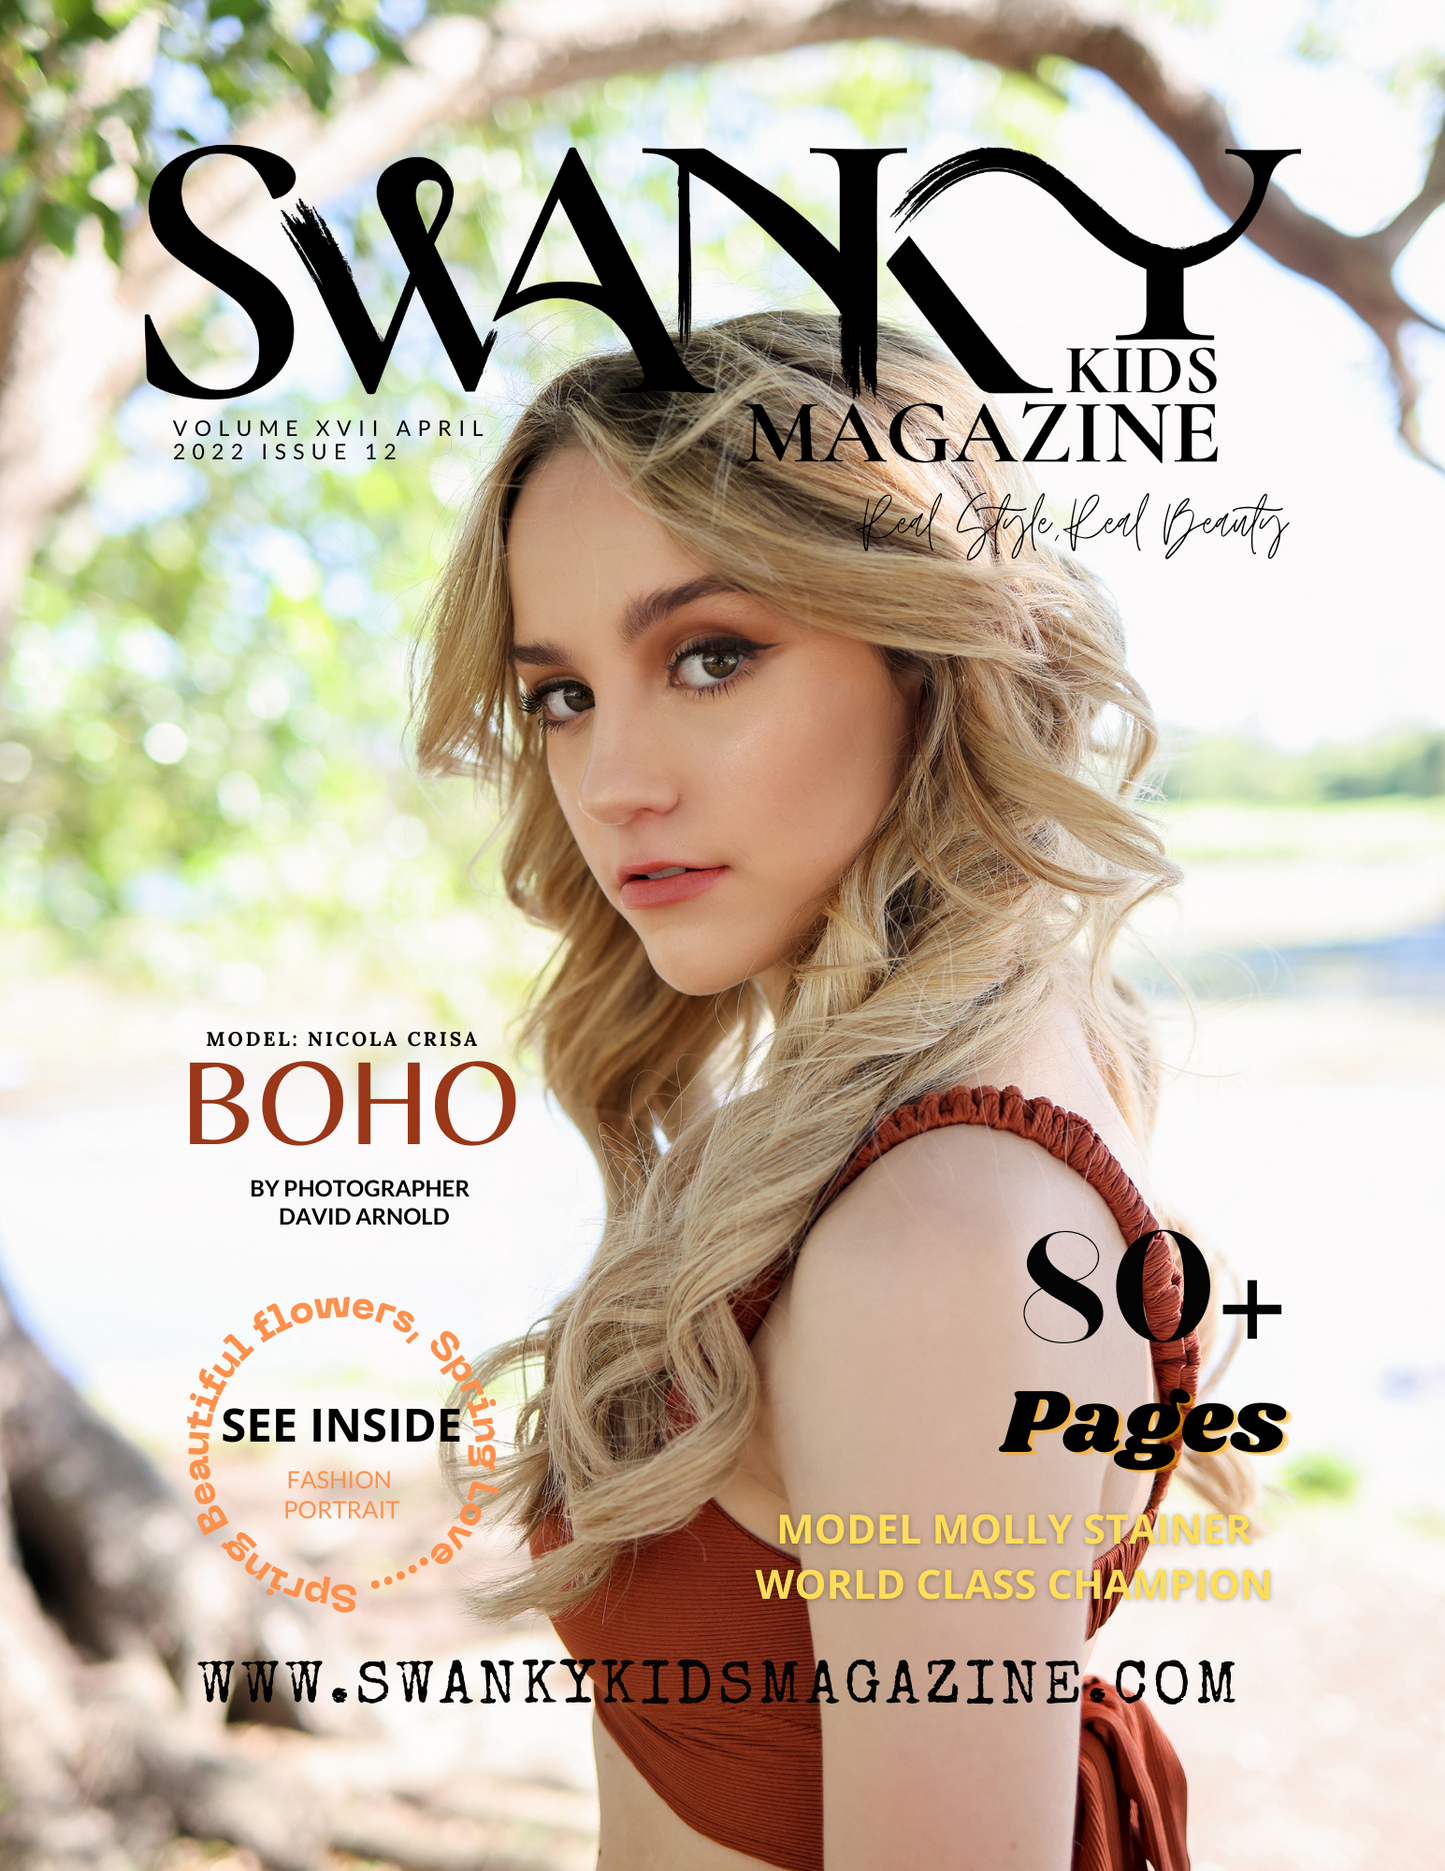 Swanky Kids Magazine APRIL 2022 VOL XVII Issue 12